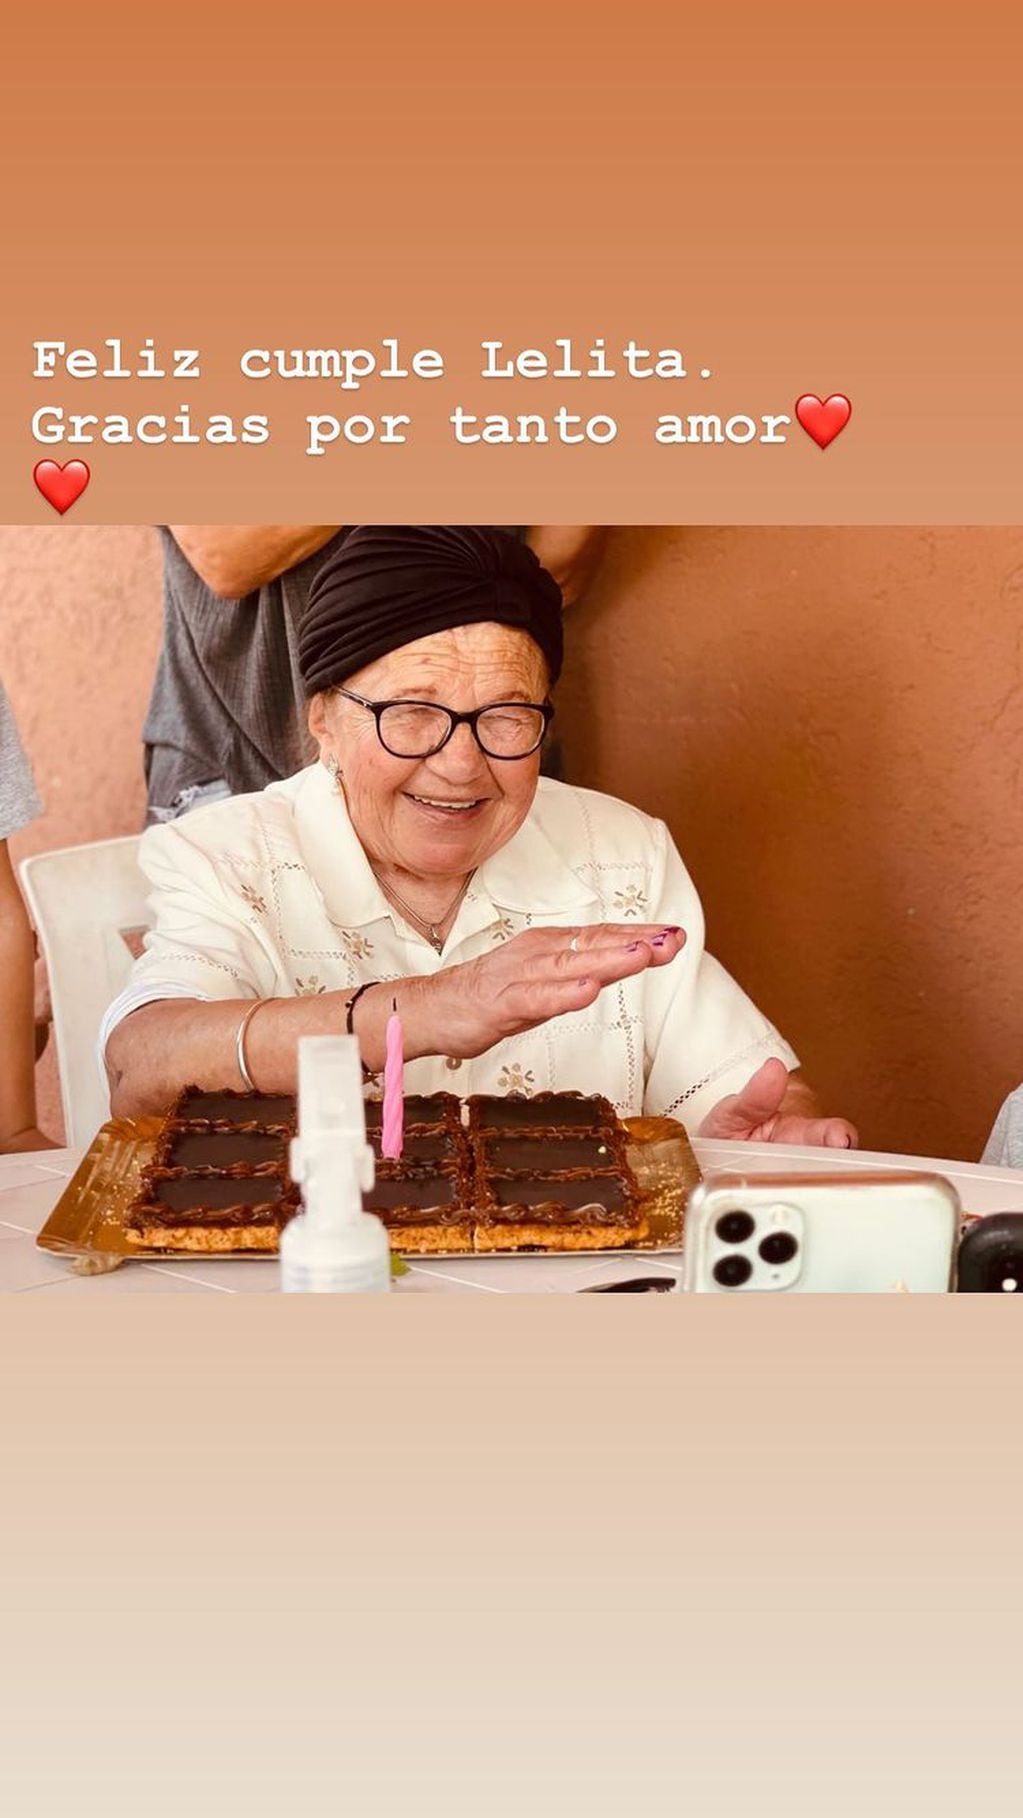 El festejo de "Lelita" en Rosario tuvo torta y velita incluida.